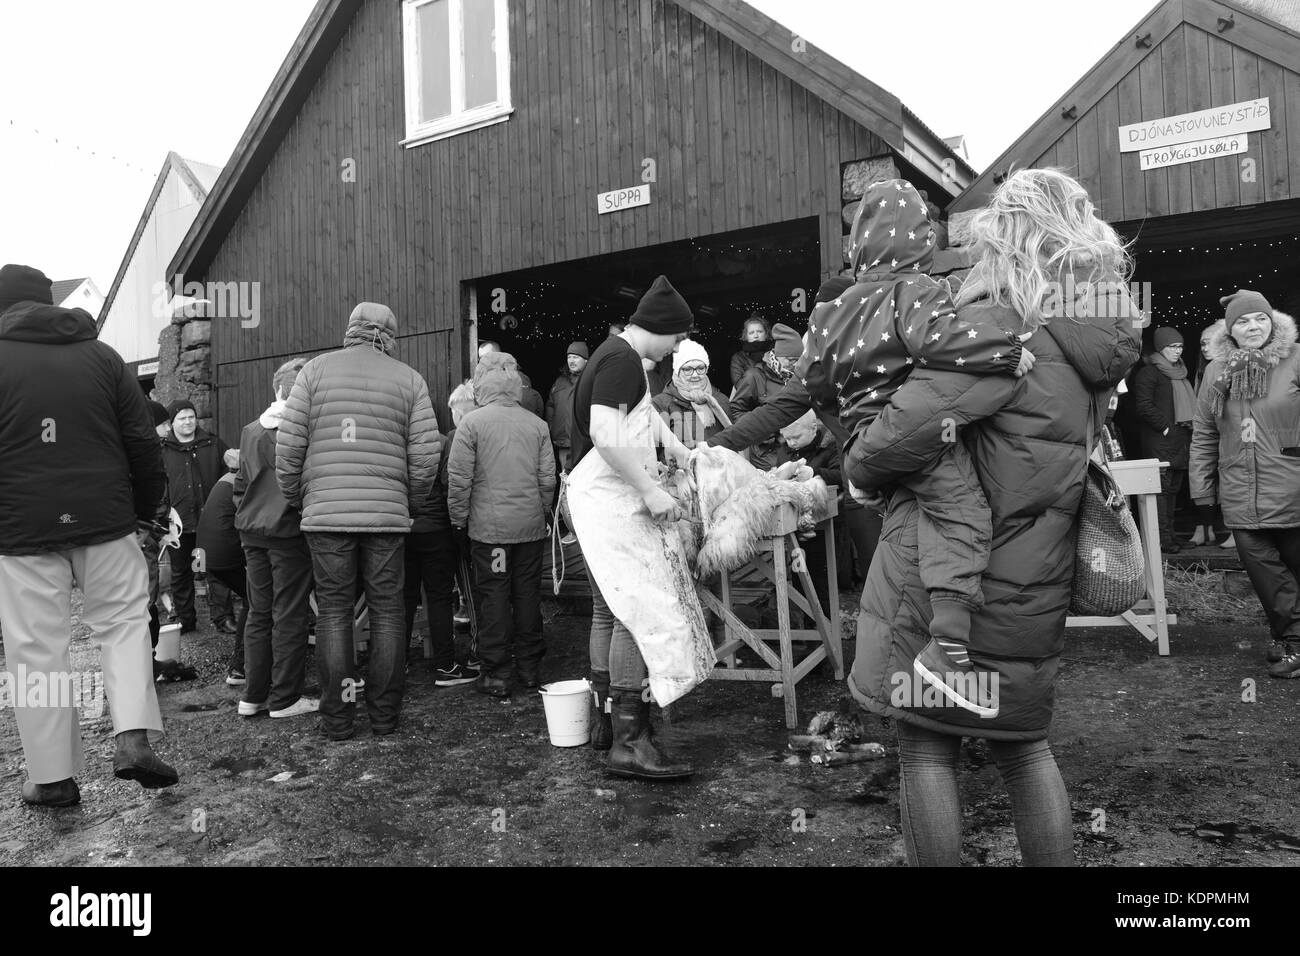 EIDI Village, Eysturoy Island, Färöer Inseln, 14. Oktober 2017. Die Faroeser Dorfbewohner beobachten traditionelle Schaf-Schlachtung Demonstration auf dem lokalen Heystfagnadur Festival Stockfoto